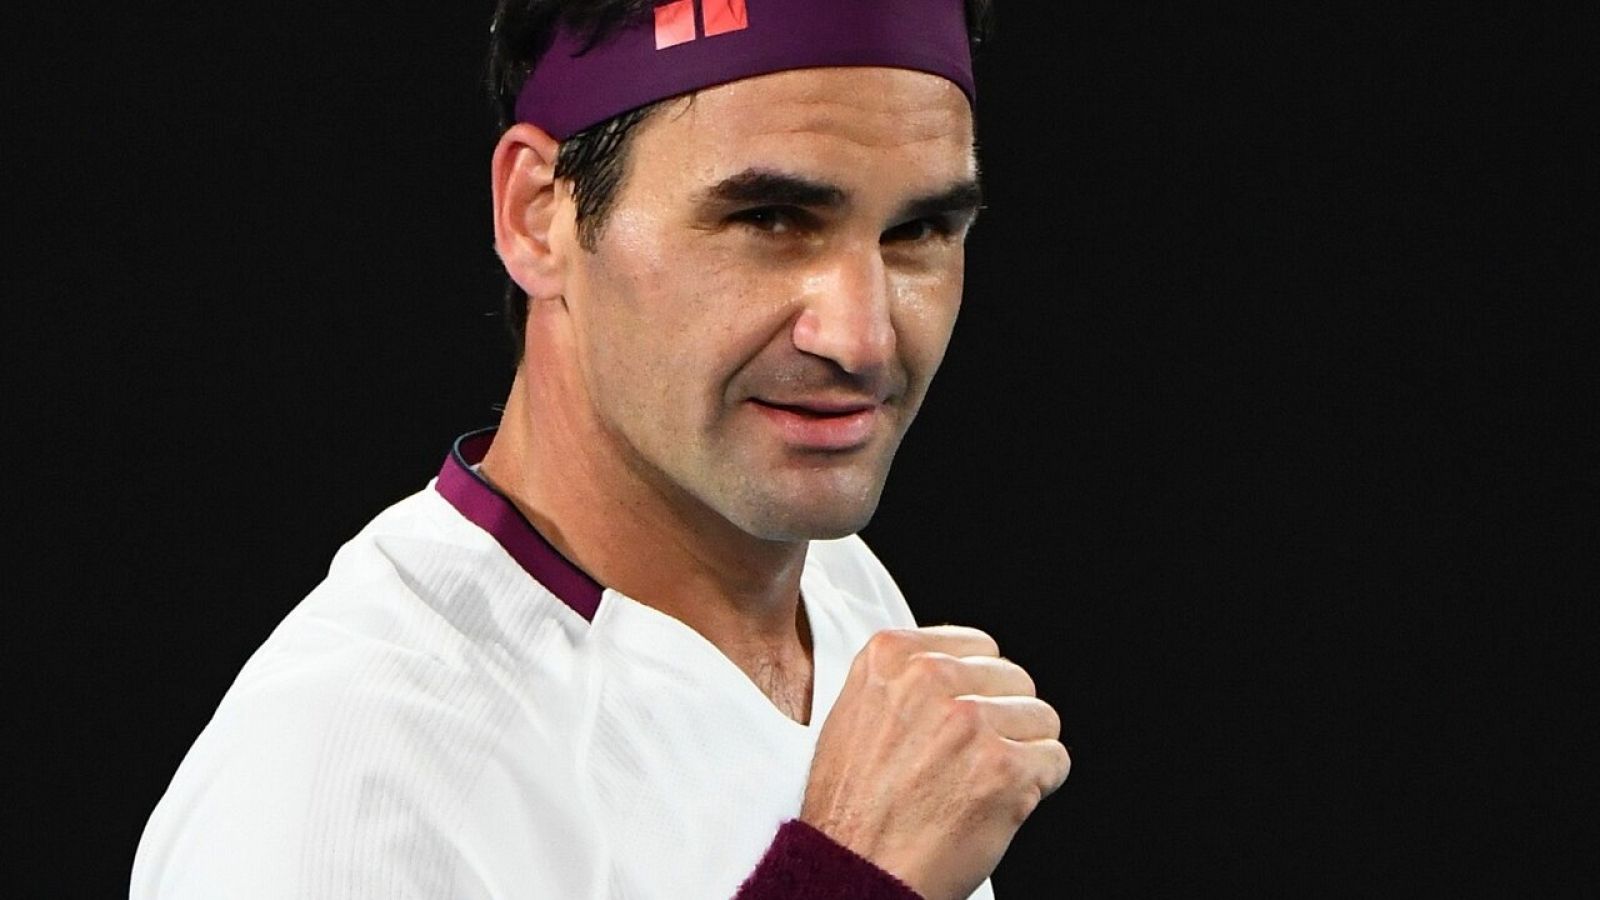 El tenista Roger Federer durante un partido de tenis